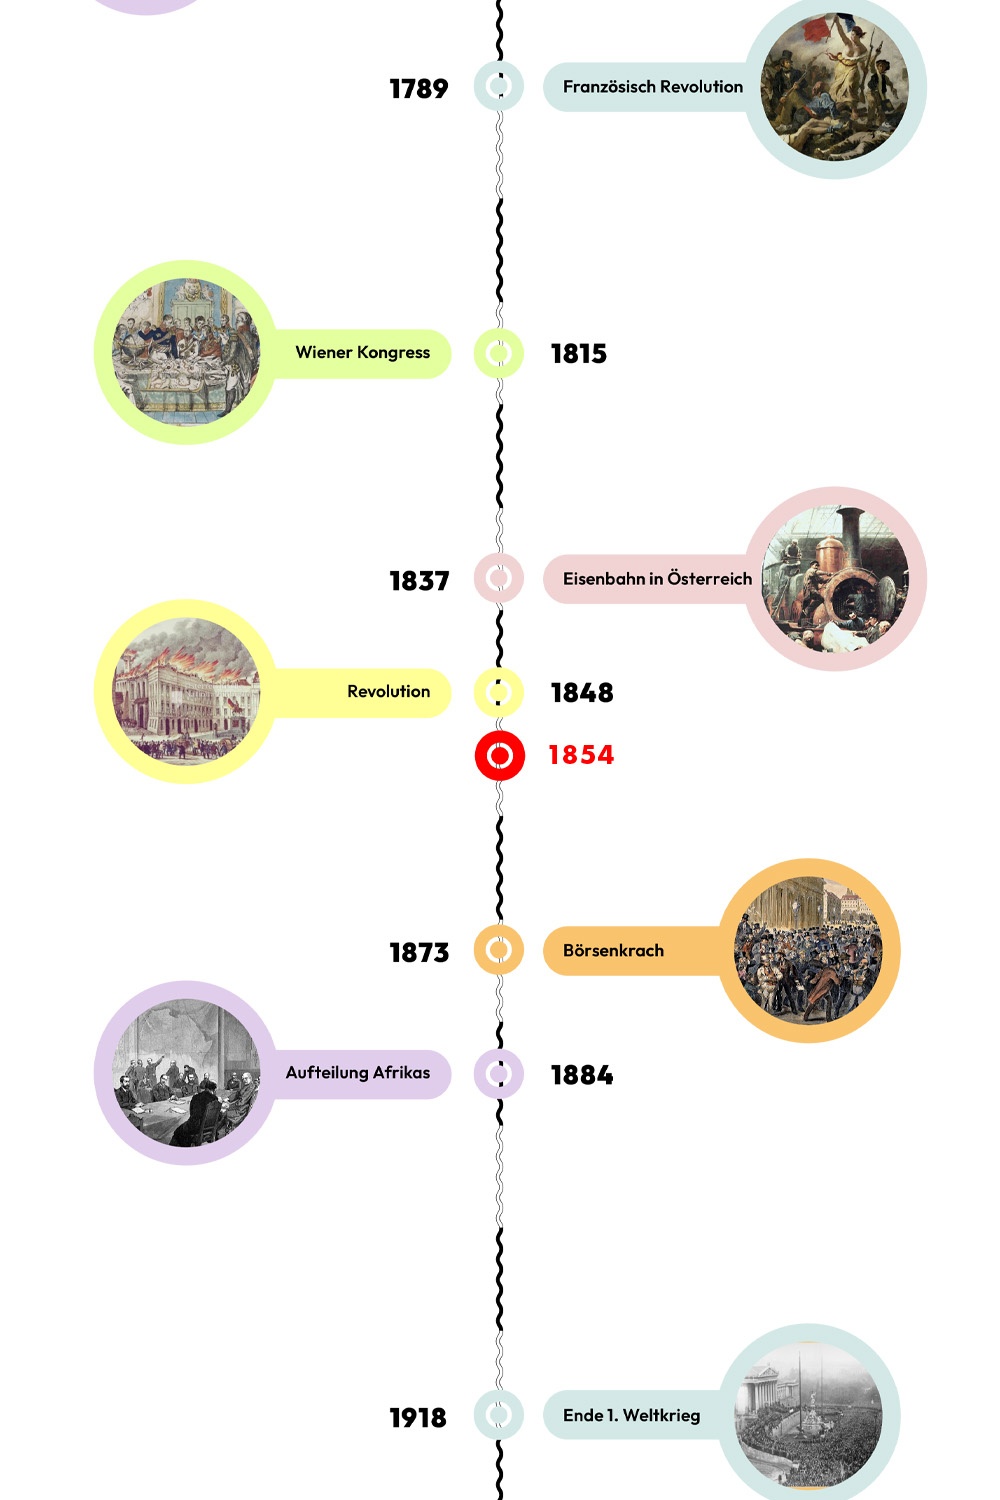 Zeitstrahl mit historischen Ereignissen - 1931 ist hervorgehoben. © wasbishergeschah.at